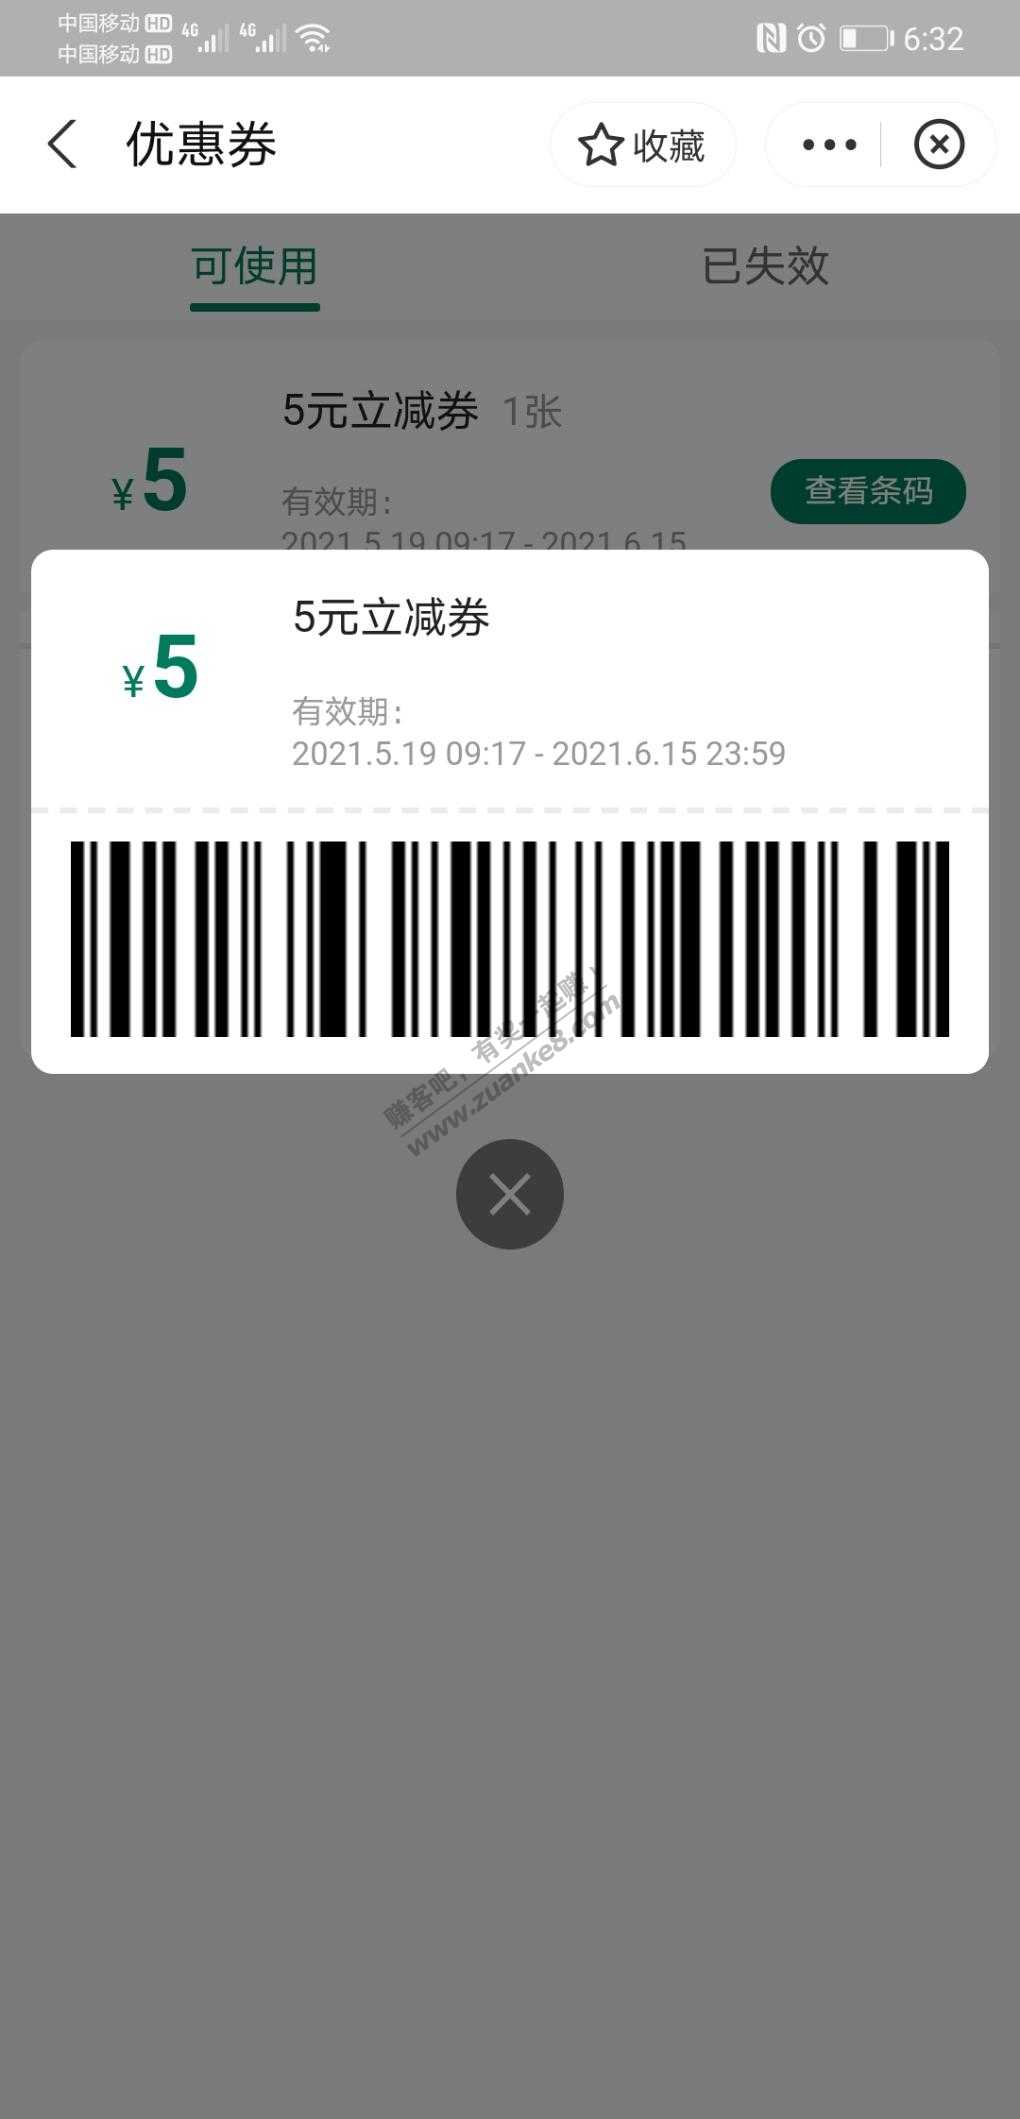 7-11-五元现金券-惠小助(52huixz.com)